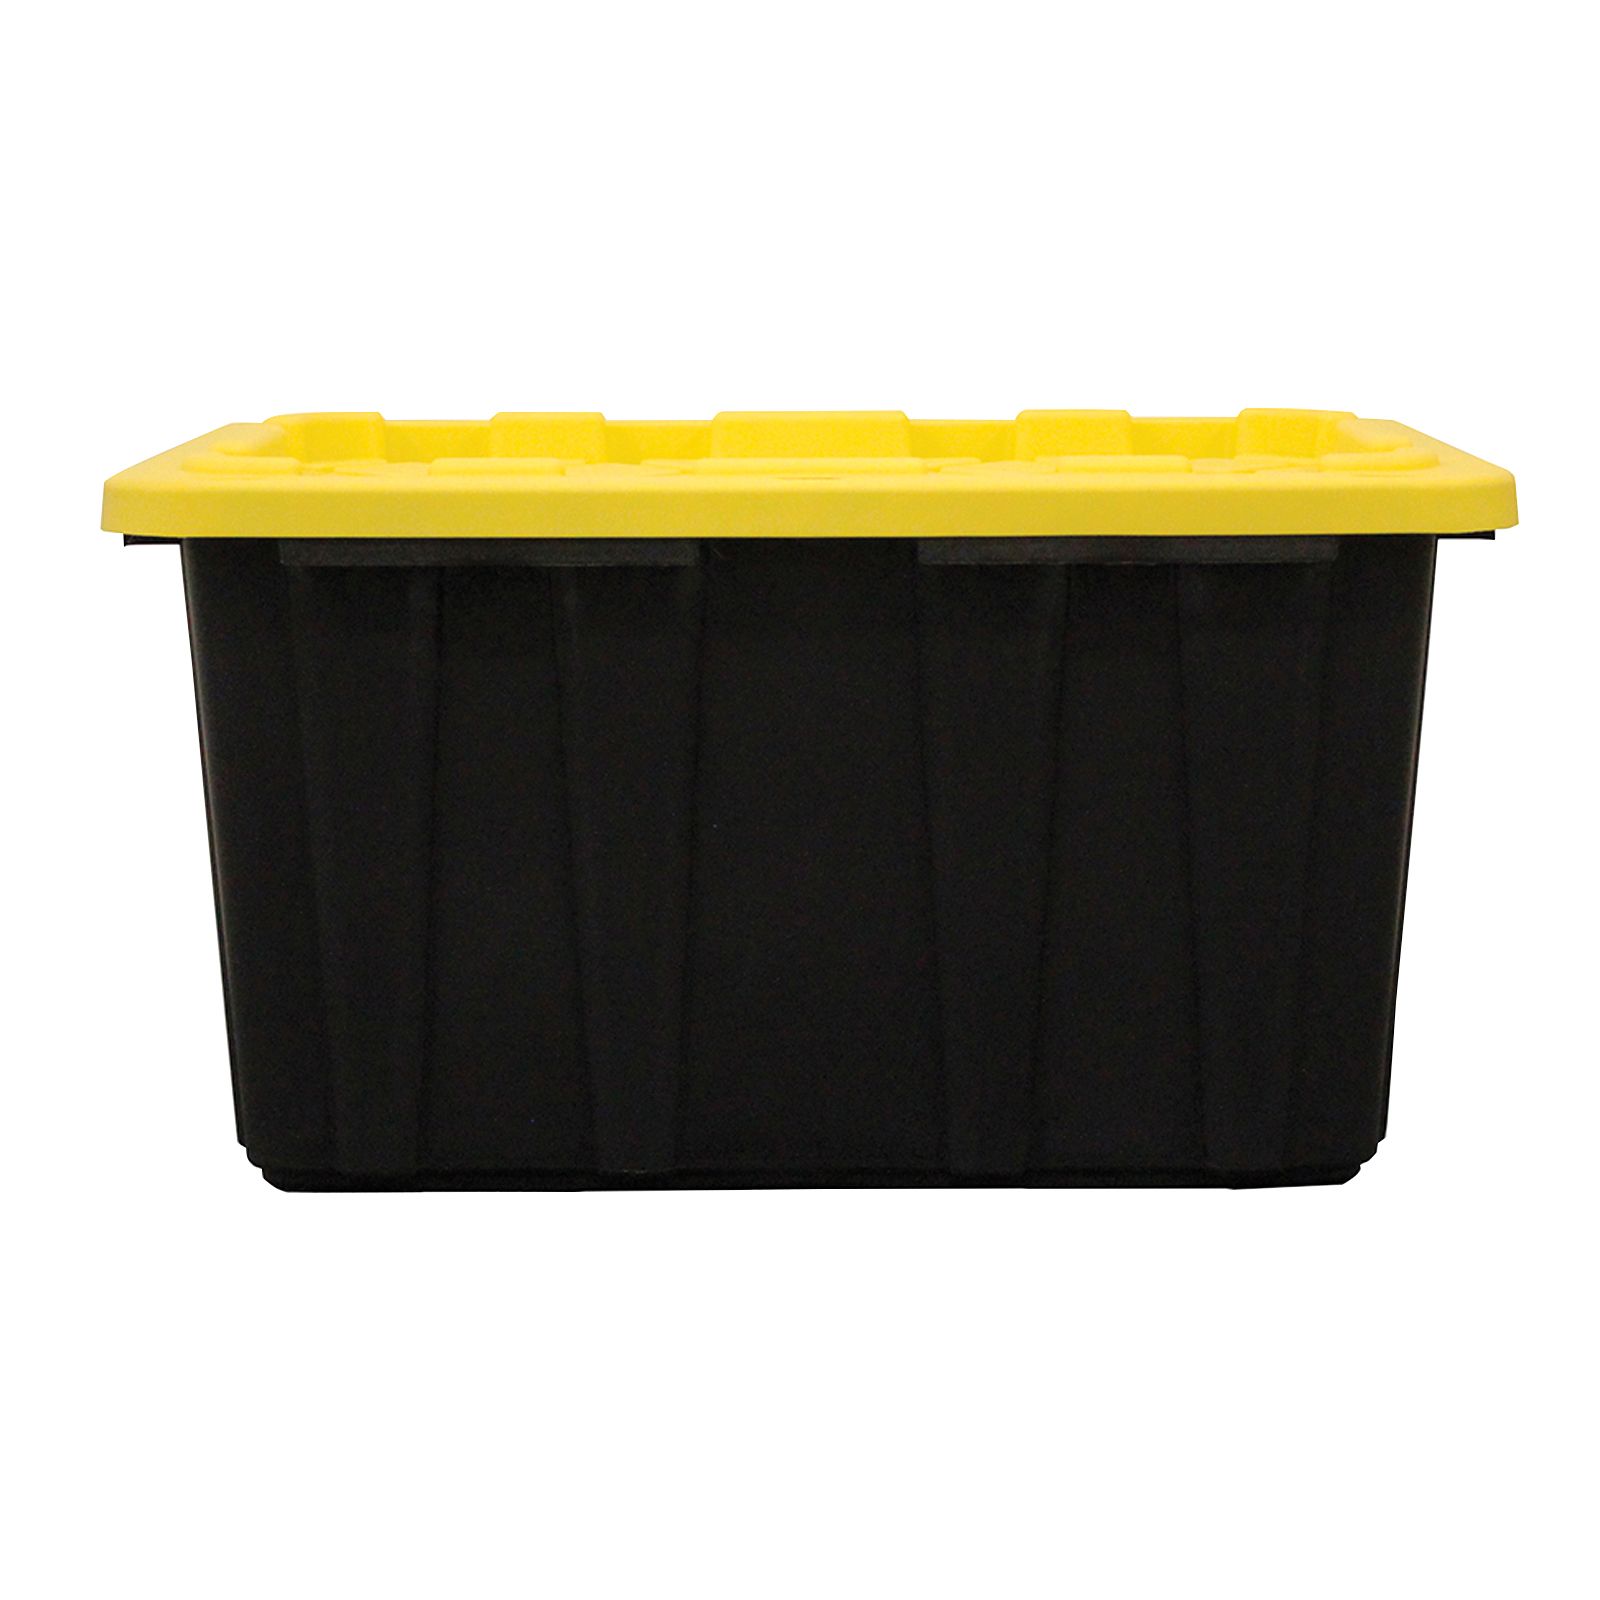 Berkley Jensen 27 Gallon Storage Tote/Strong Box - Black/Yellow